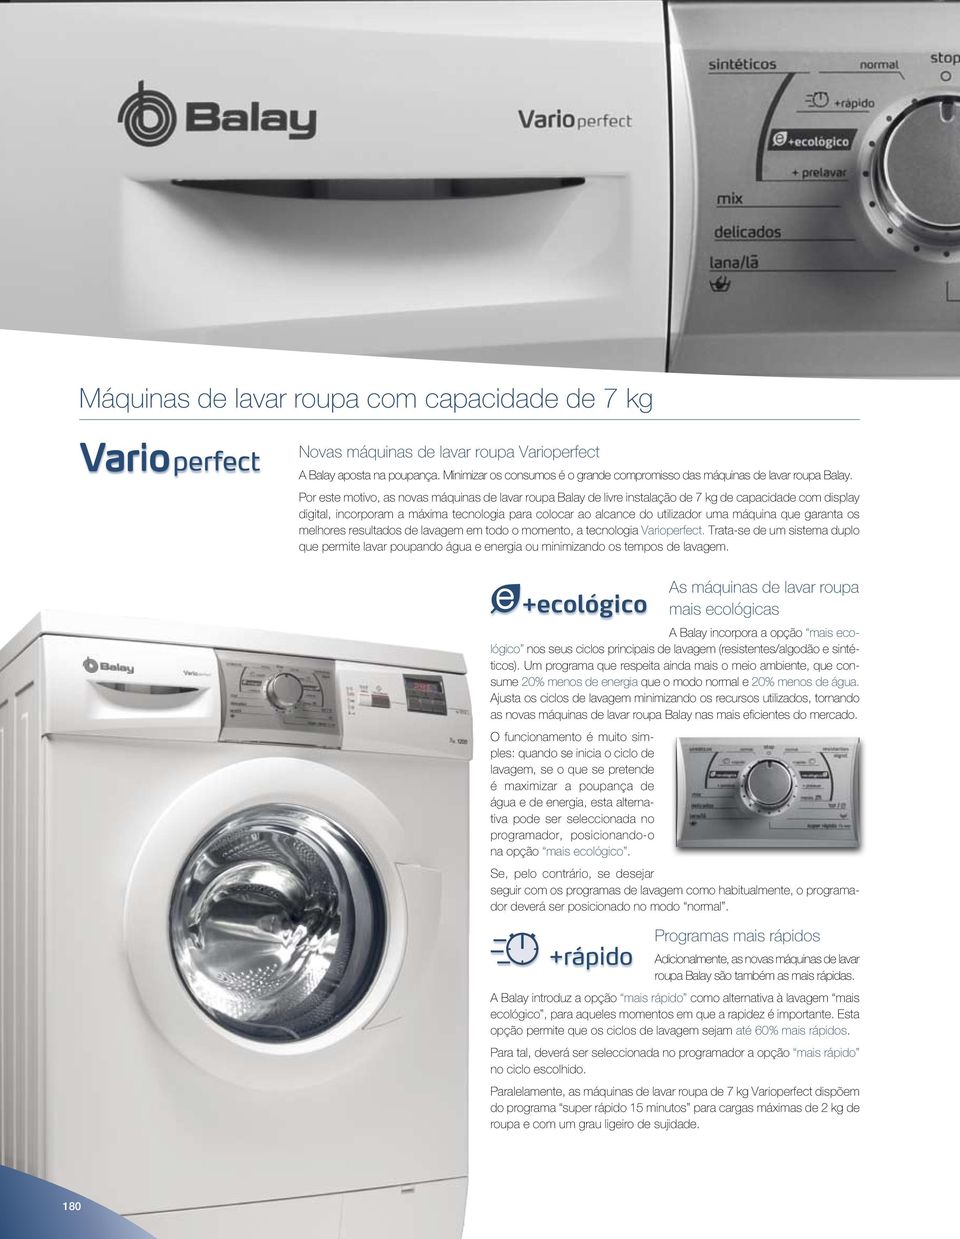 que garanta os melhores resultados de lavagem em todo o momento, a tecnologia Varioperfect. Trata-se de um sistema duplo que permite lavar poupando água e energia ou minimizando os tempos de lavagem.